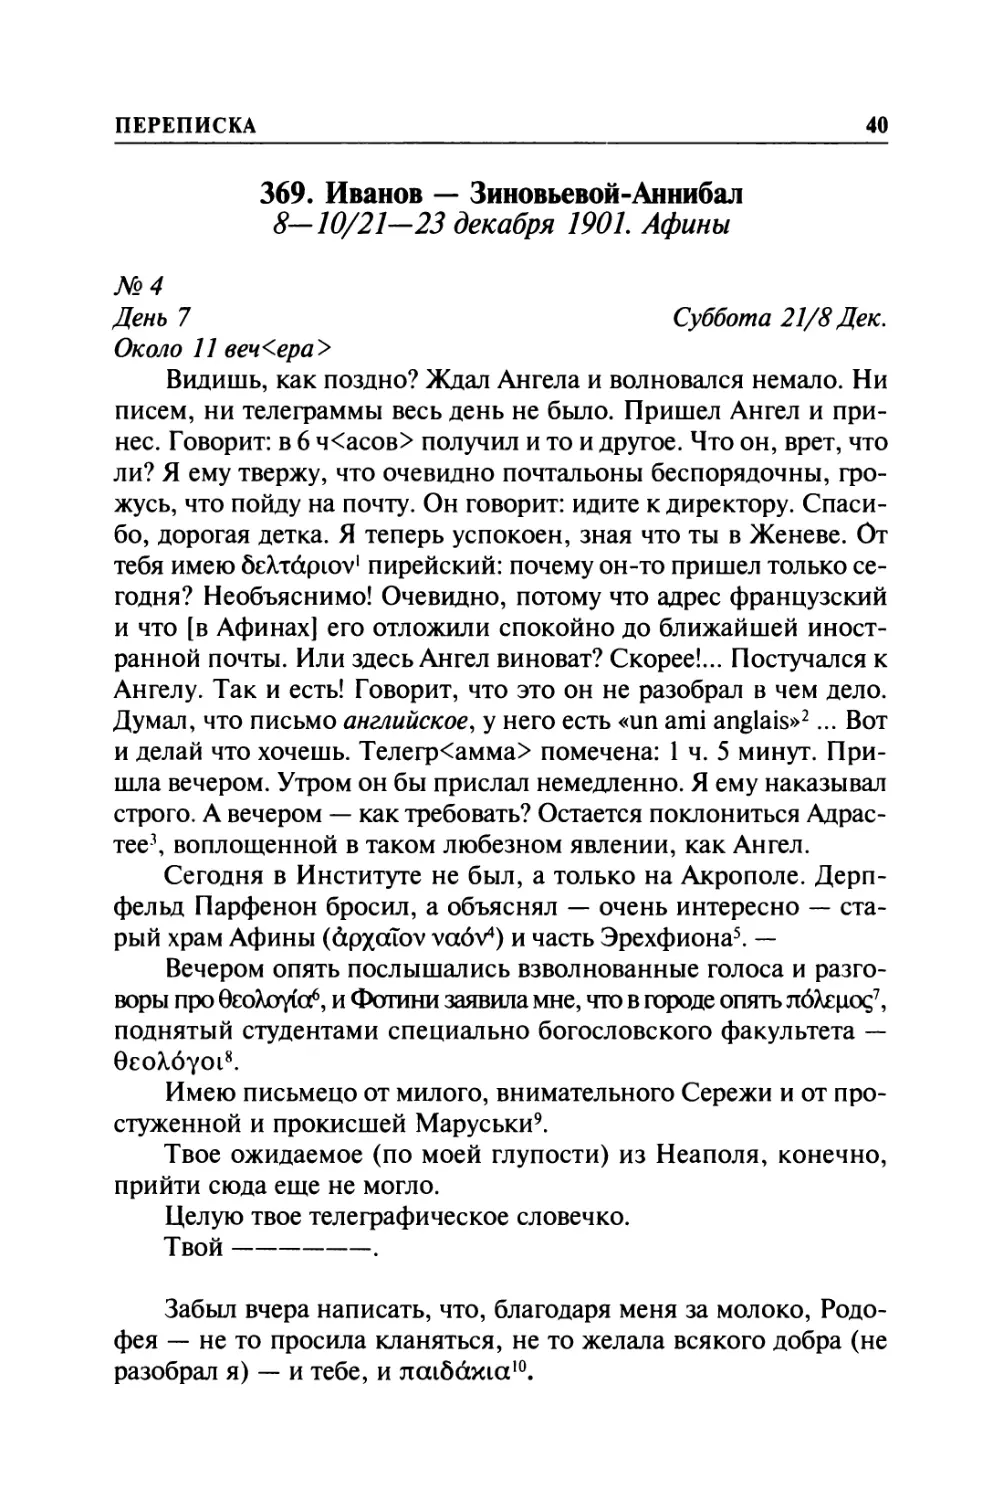 369. Иванов — Зиновьевой-Аннибал. 8—10/ 21—23 декабря 1901. Афины